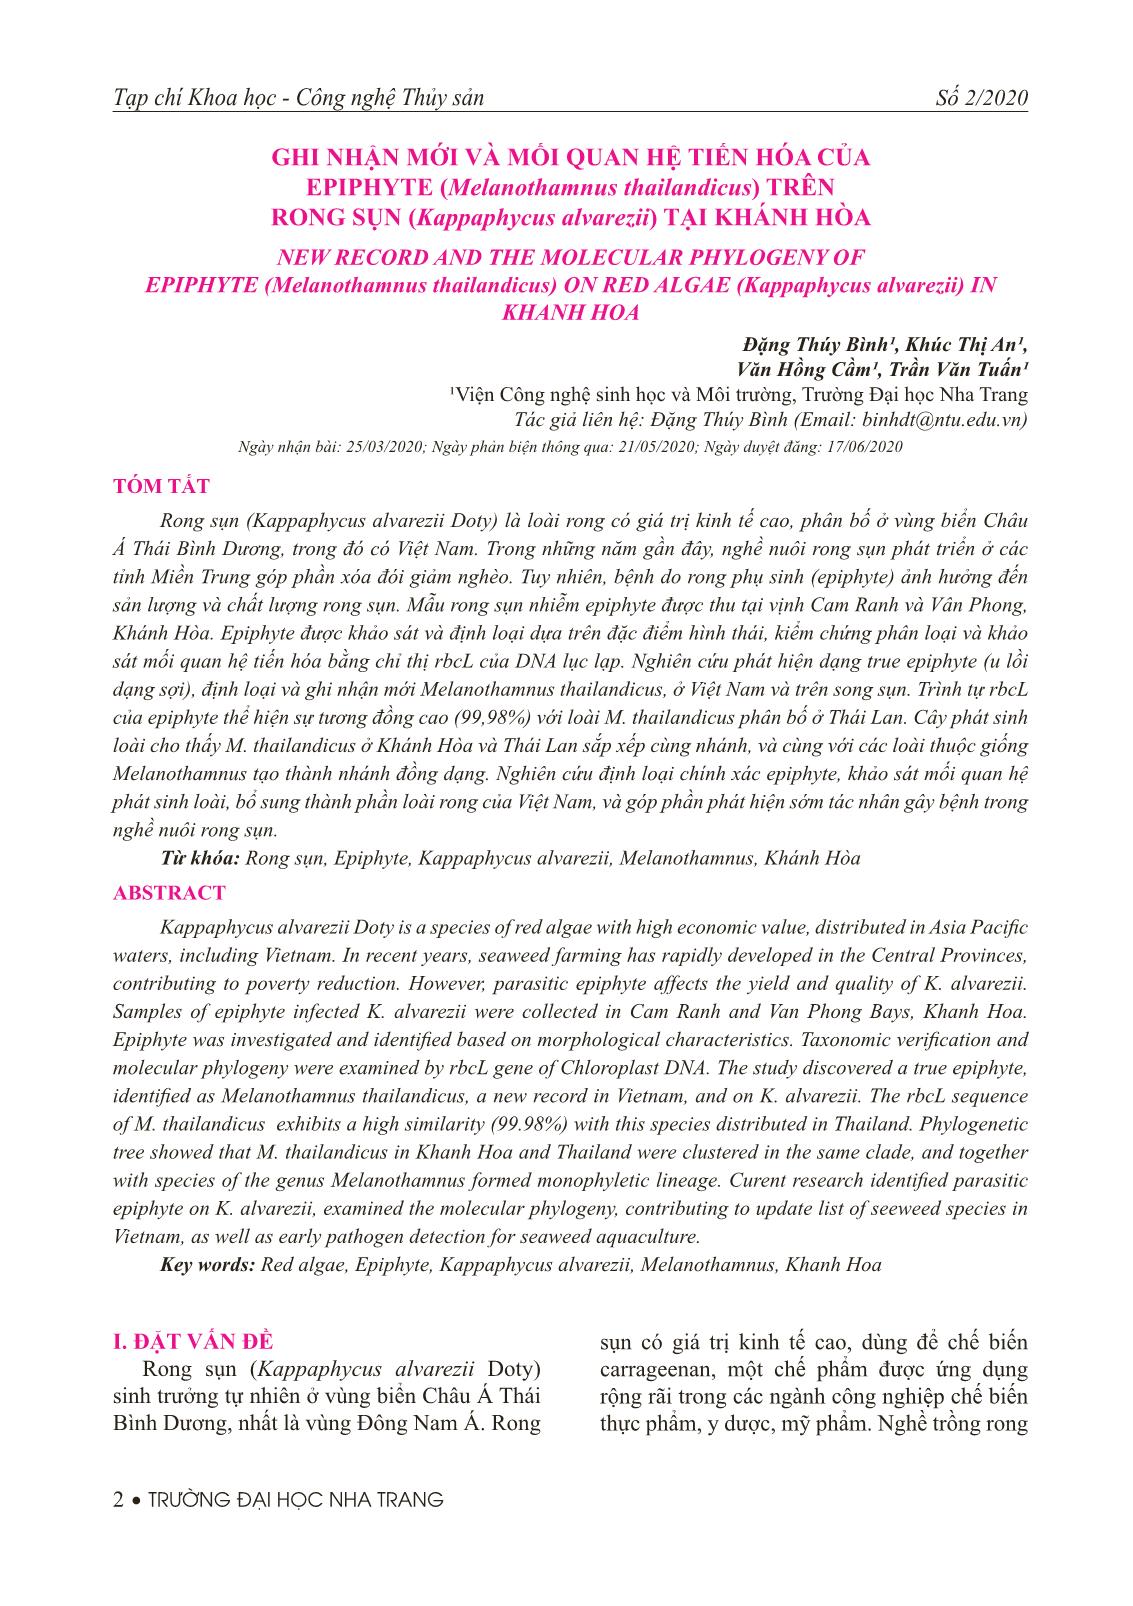 Ghi nhận mới và mối quan hệ tiến hóa của epiphyte (Melanothamnus thailandicus) trên rong sụn (Kappaphycus alvarezii) tại Khánh Hòa trang 1